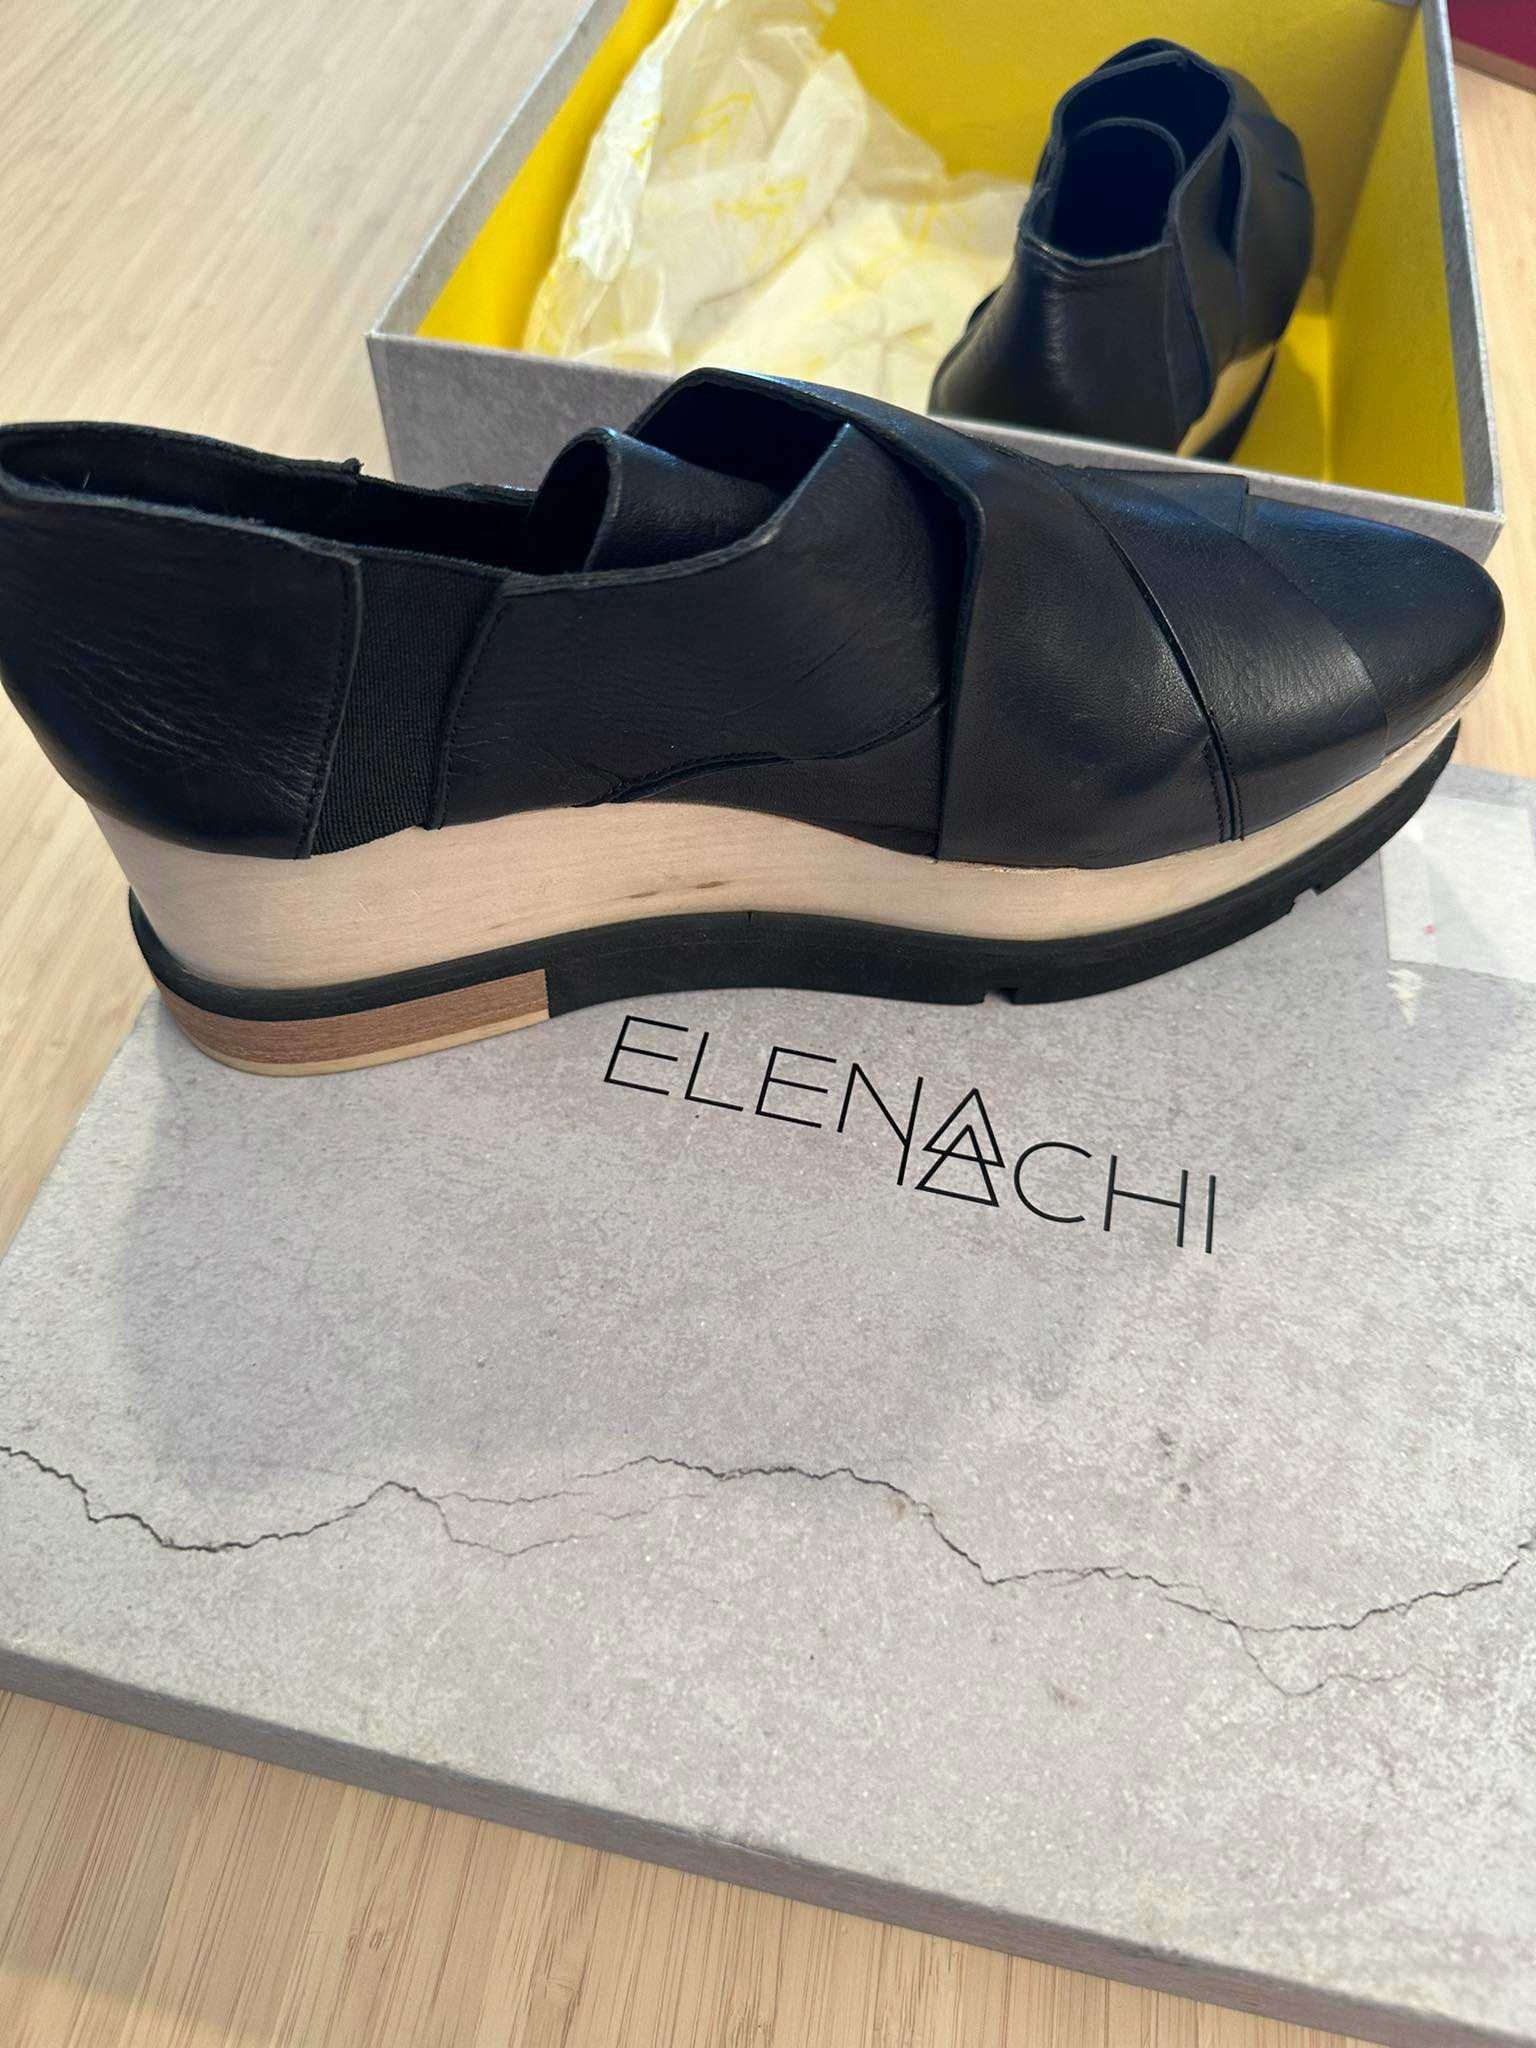 Sapatos Elena Iachi Novos